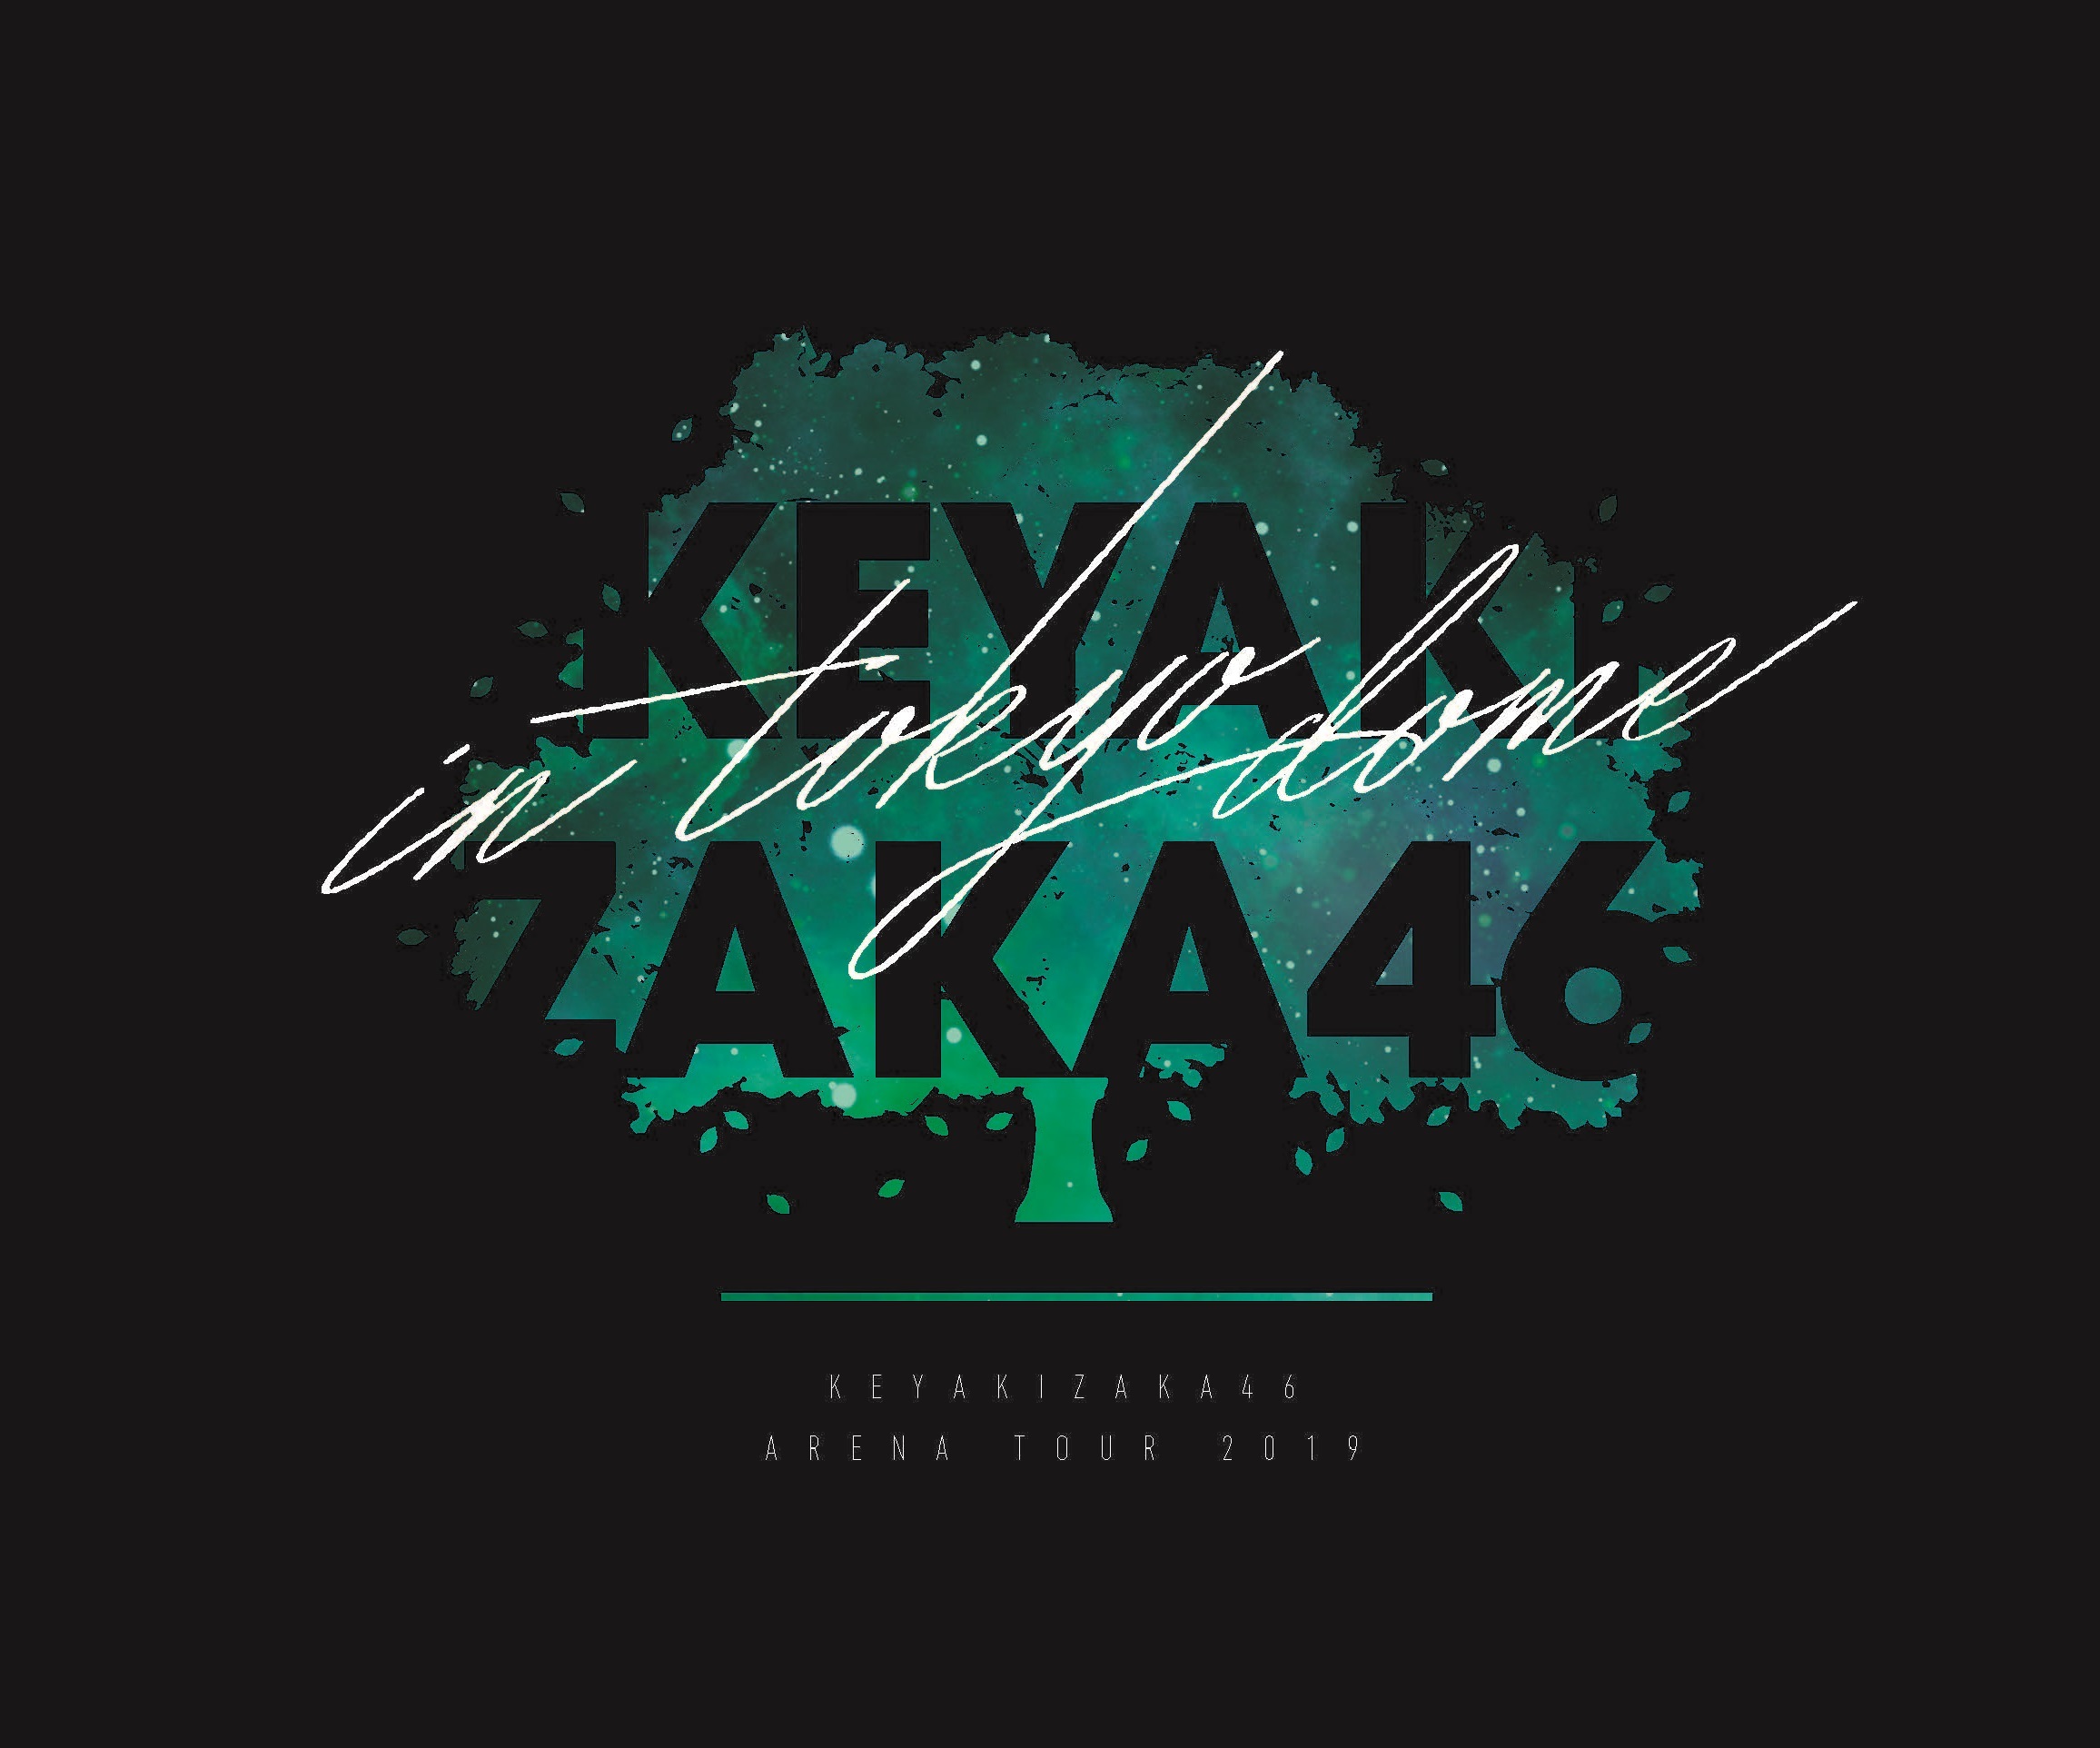 欅坂46 夏の全国アリーナツアー19 東京ドーム公演 公式ロゴが決定 ニュース 欅坂46公式サイト